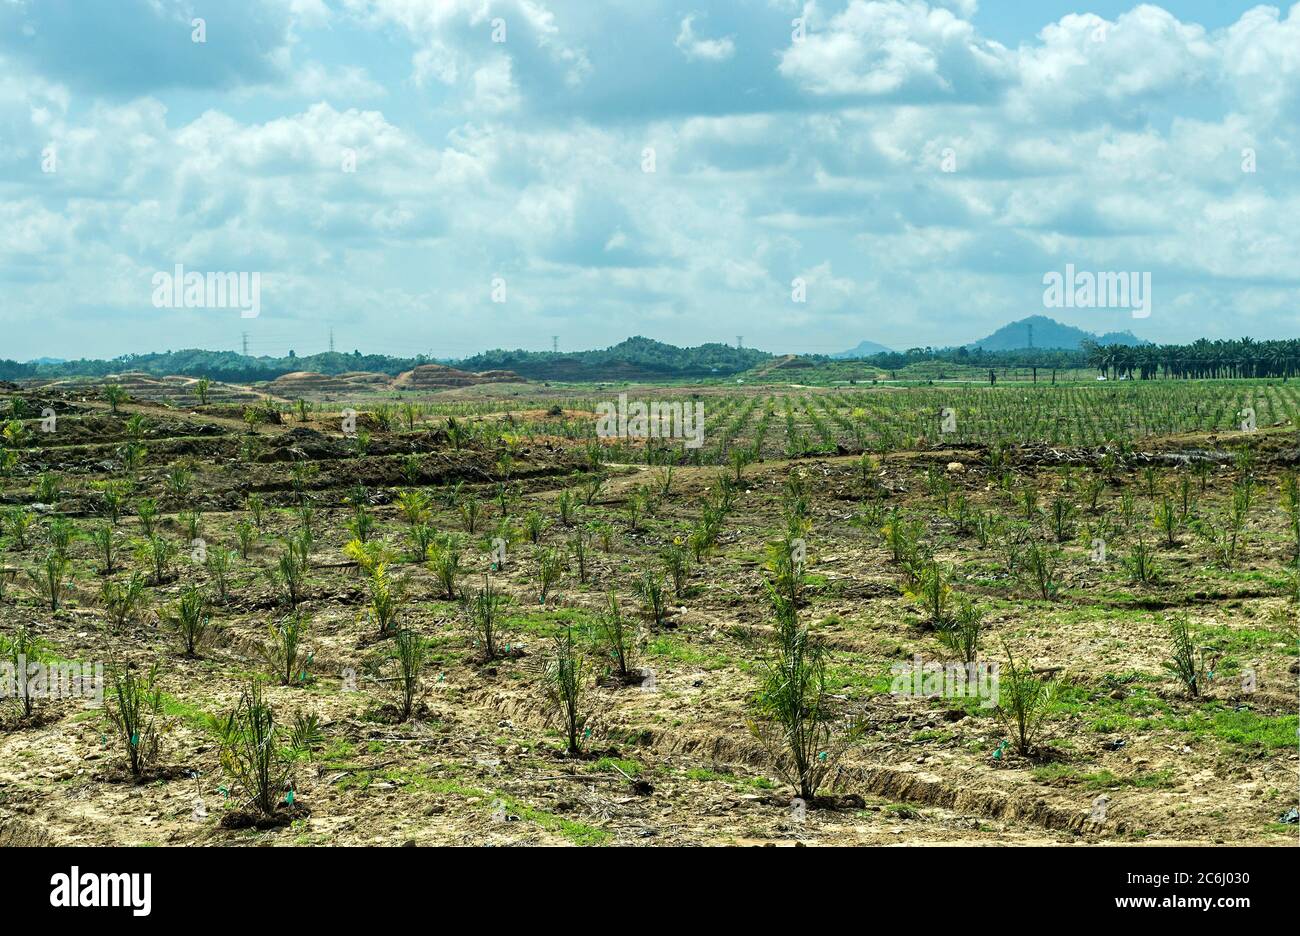 Plantation de jeunes palmiers à huile (Elaeis guineensis) dans les zones de forêt vierge, Sabah, Bornéo, Malaisie Banque D'Images